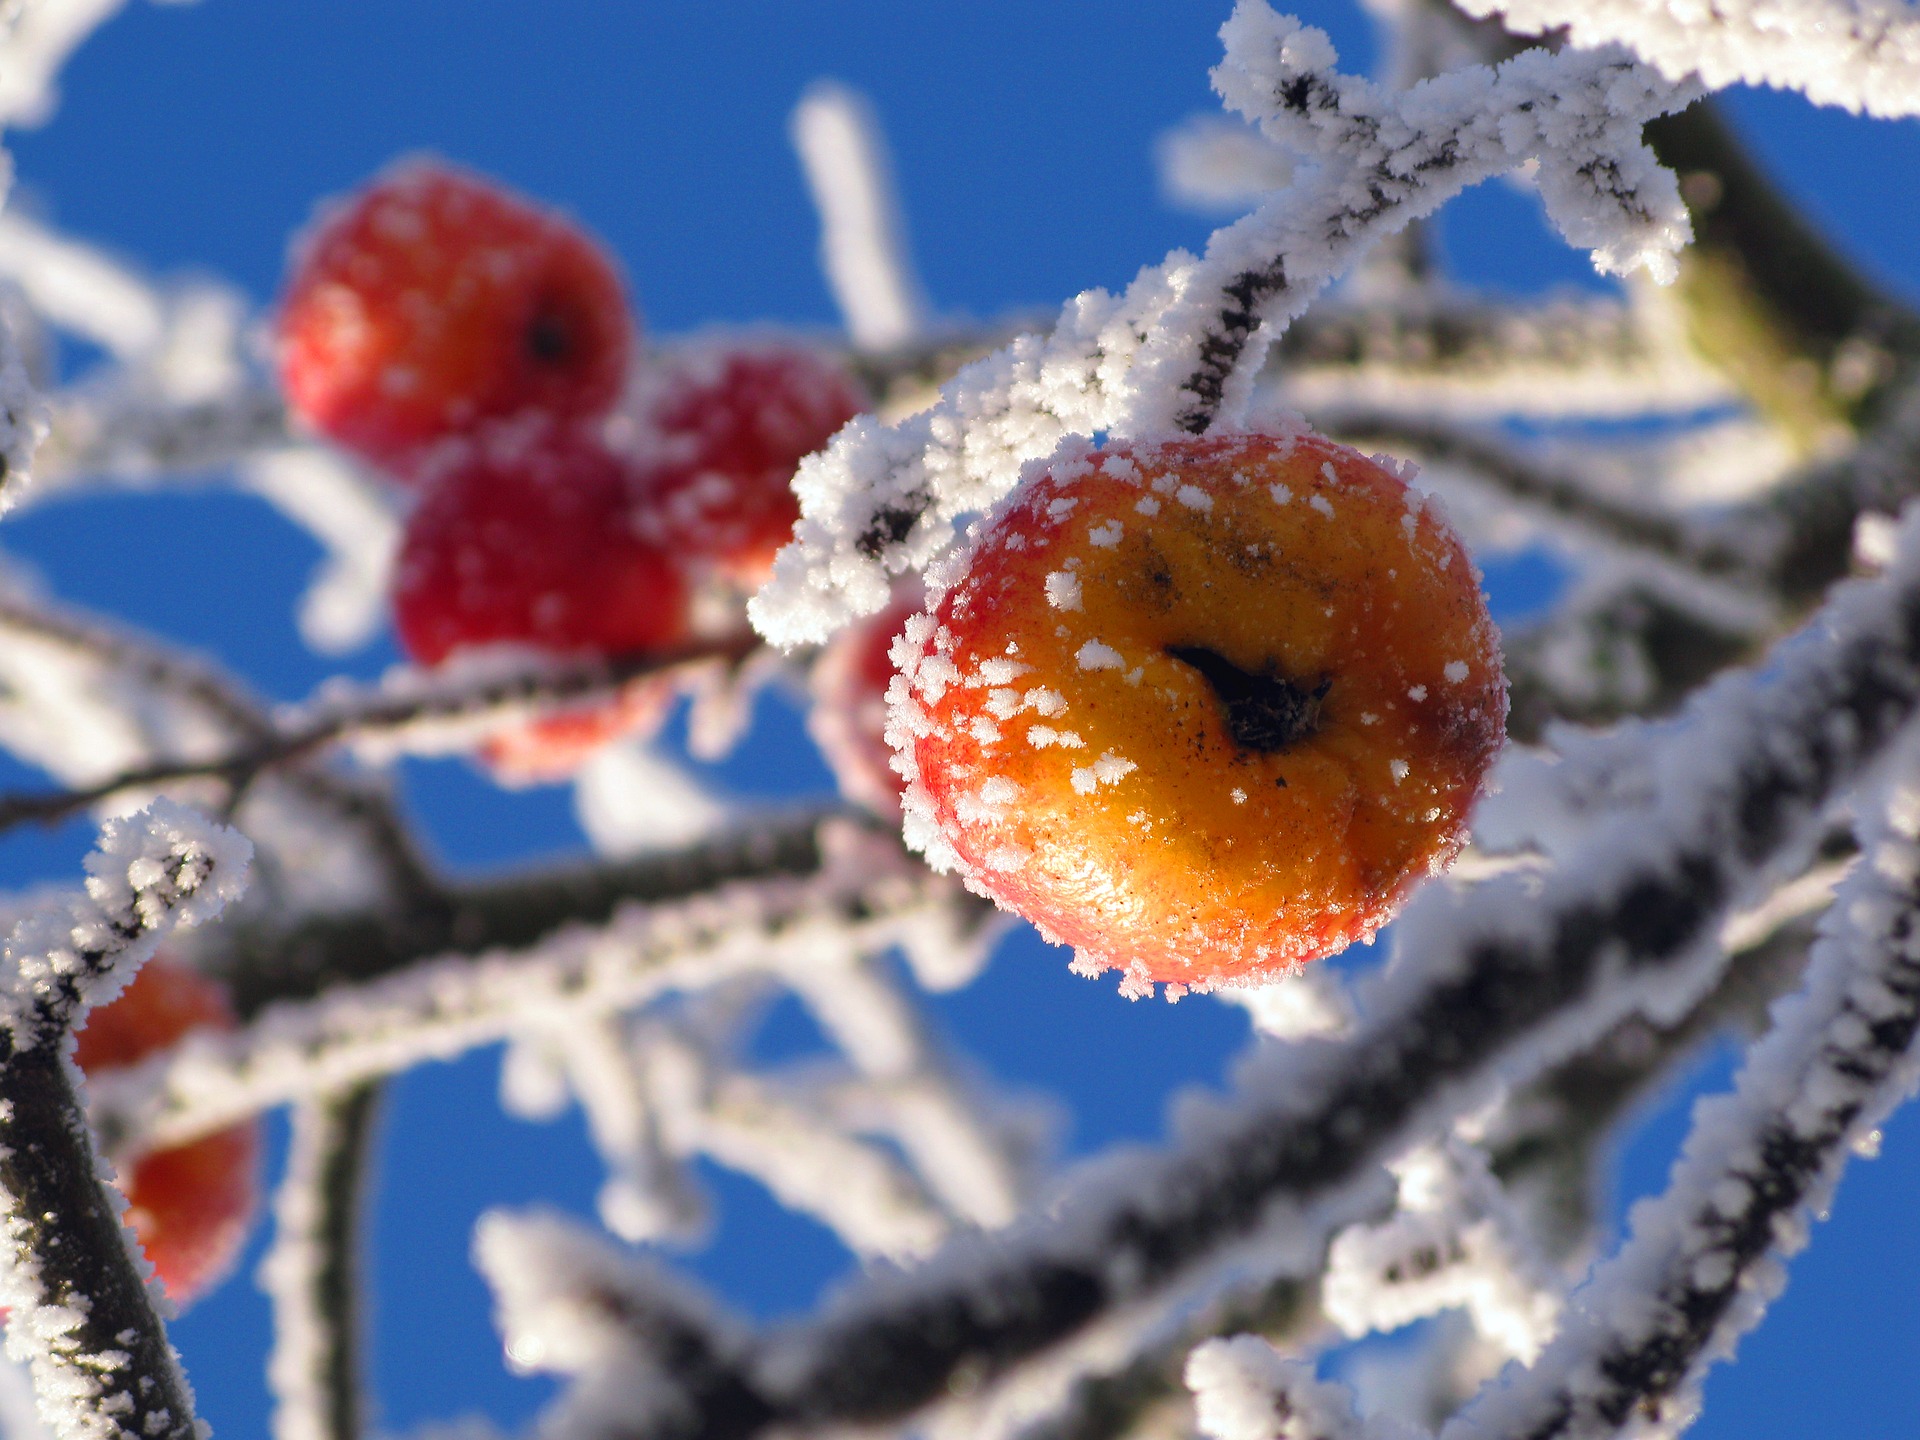 Die Eisheiligen markieren, laut einer Bauernregel, die letzten kalten Tage des Jahres. Bildquelle: pixabay.de